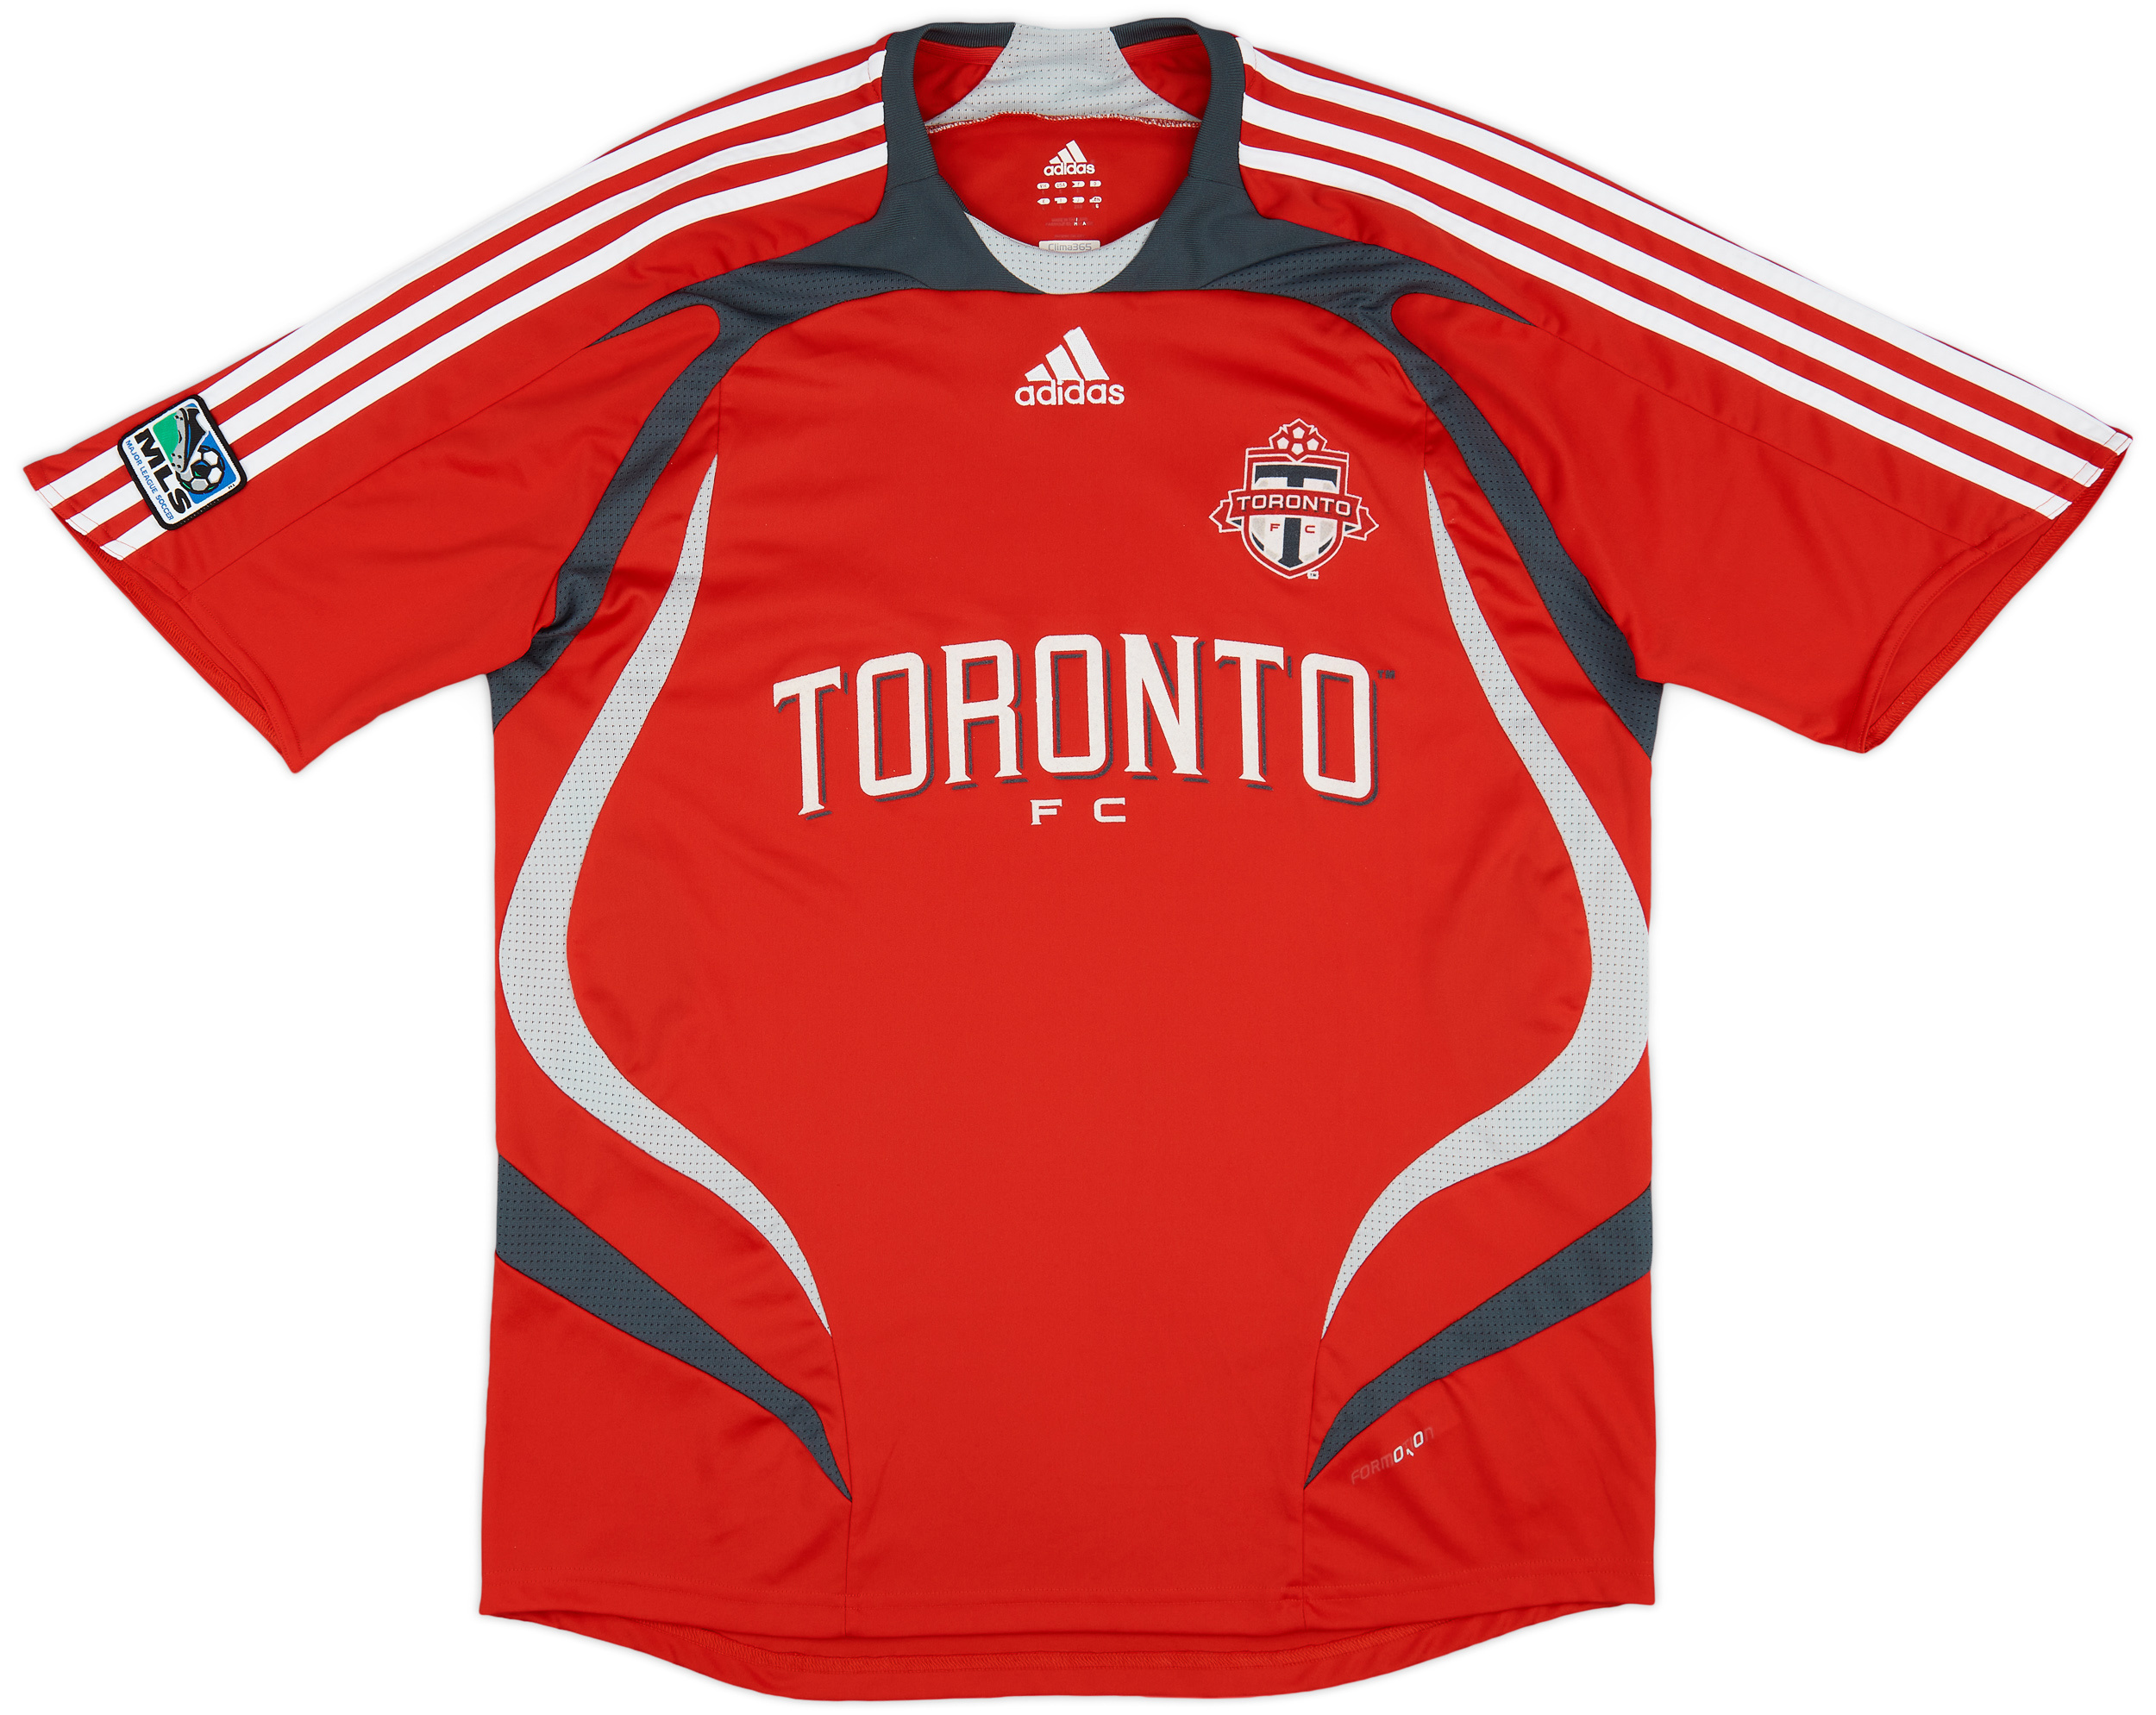 2007-08 Toronto FC Home Shirt - 8/10 - ()